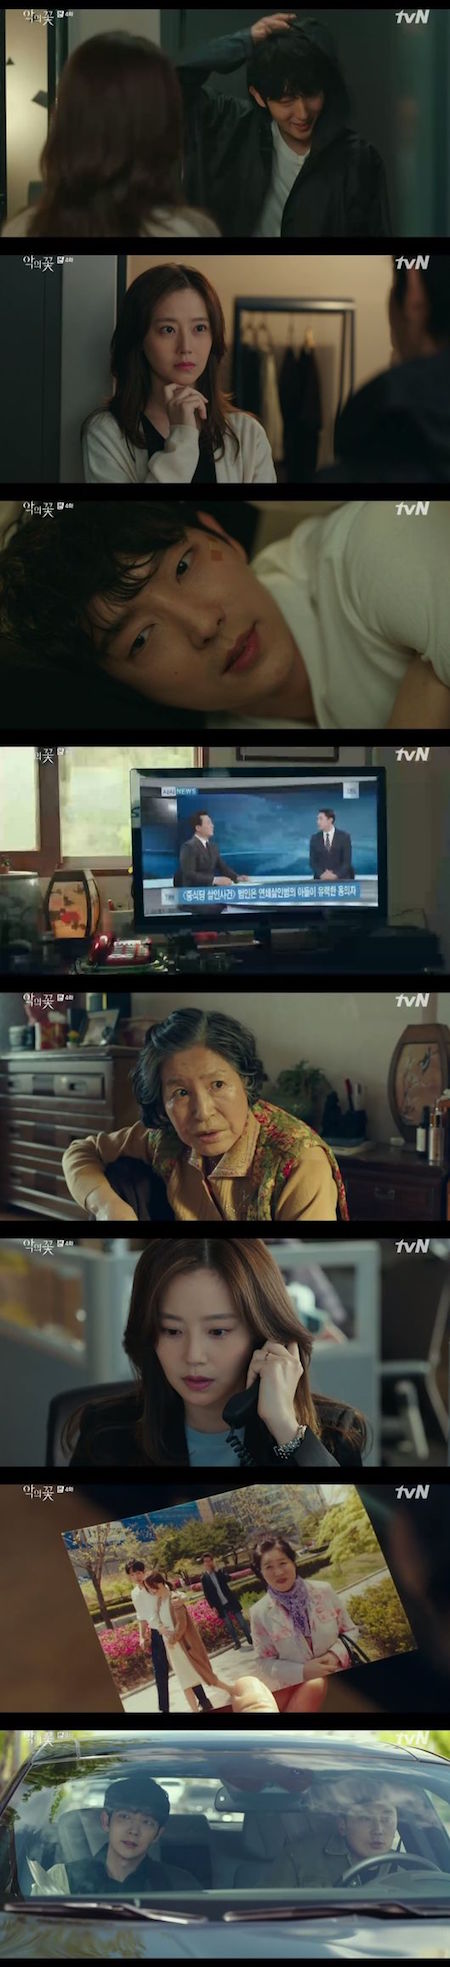 ≪韓国ドラマNOW≫「悪の花」4話、イ・ジュンギ、写真情報の提供者登場で危機